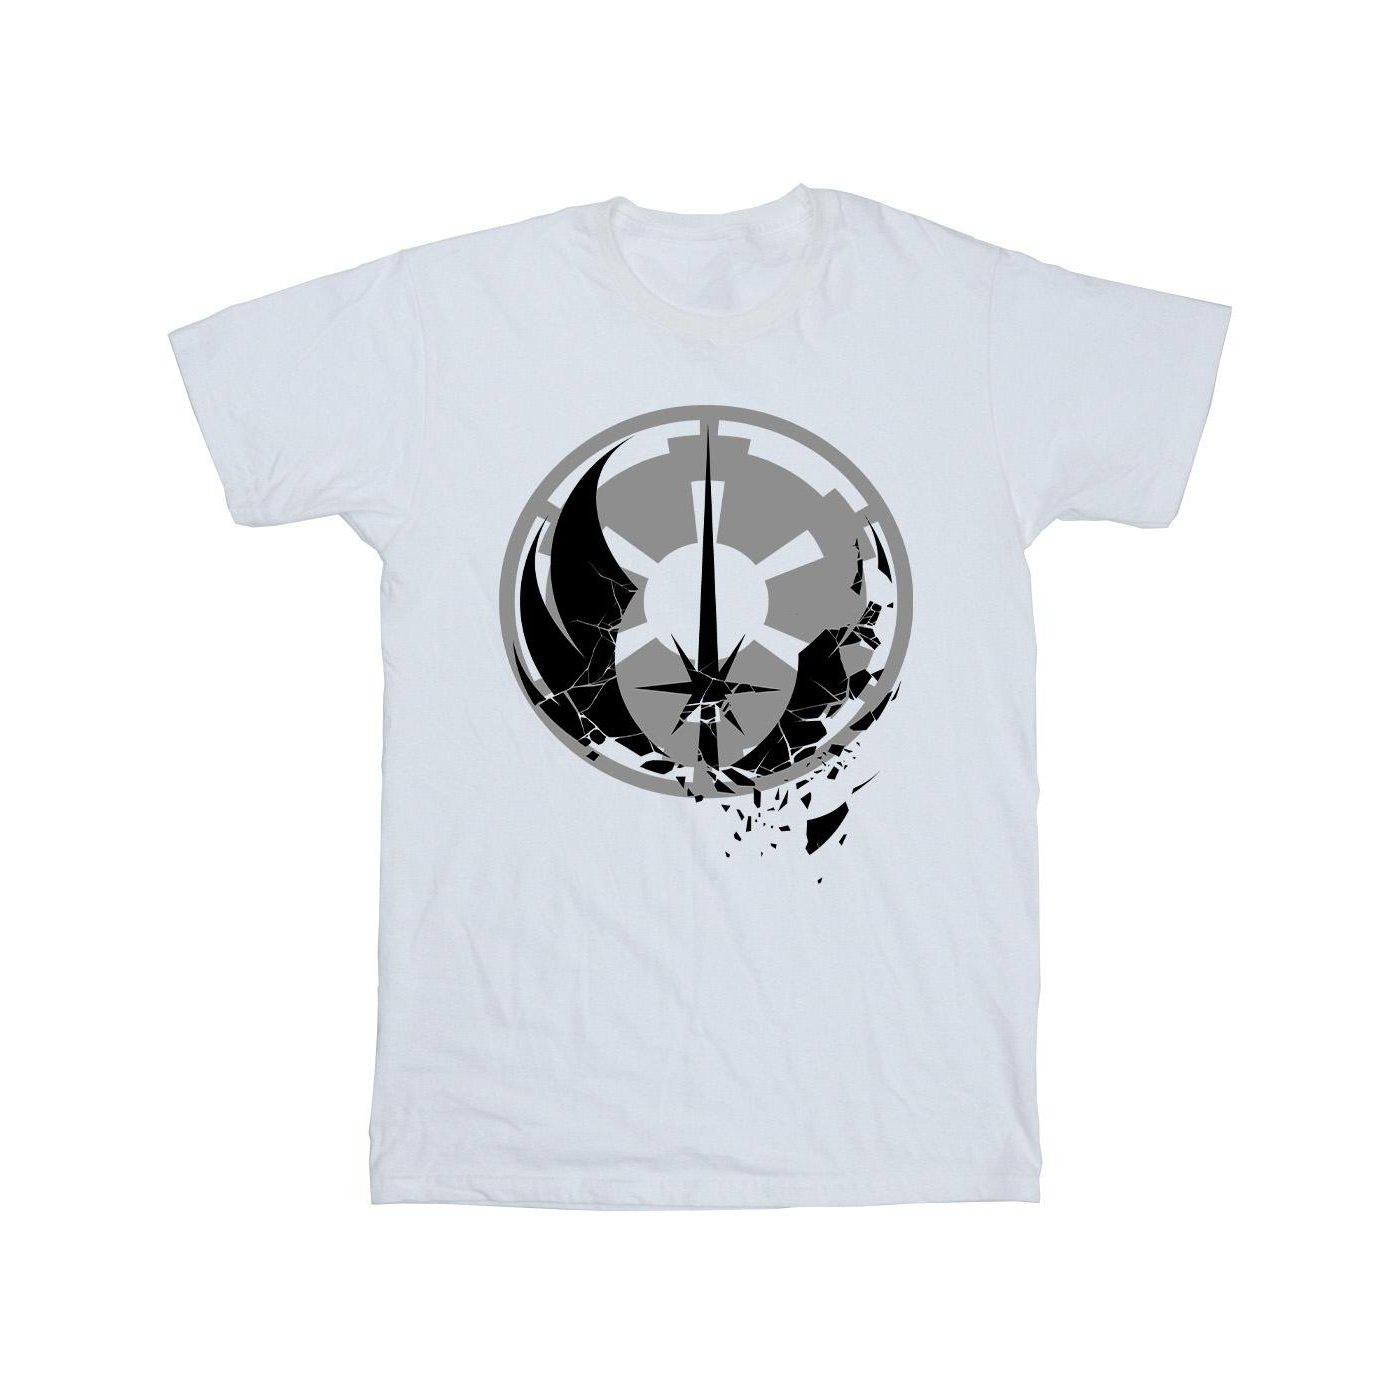 Obiwan Kenobi Fractured Logos Tshirt Jungen Weiss 128 von STAR WARS